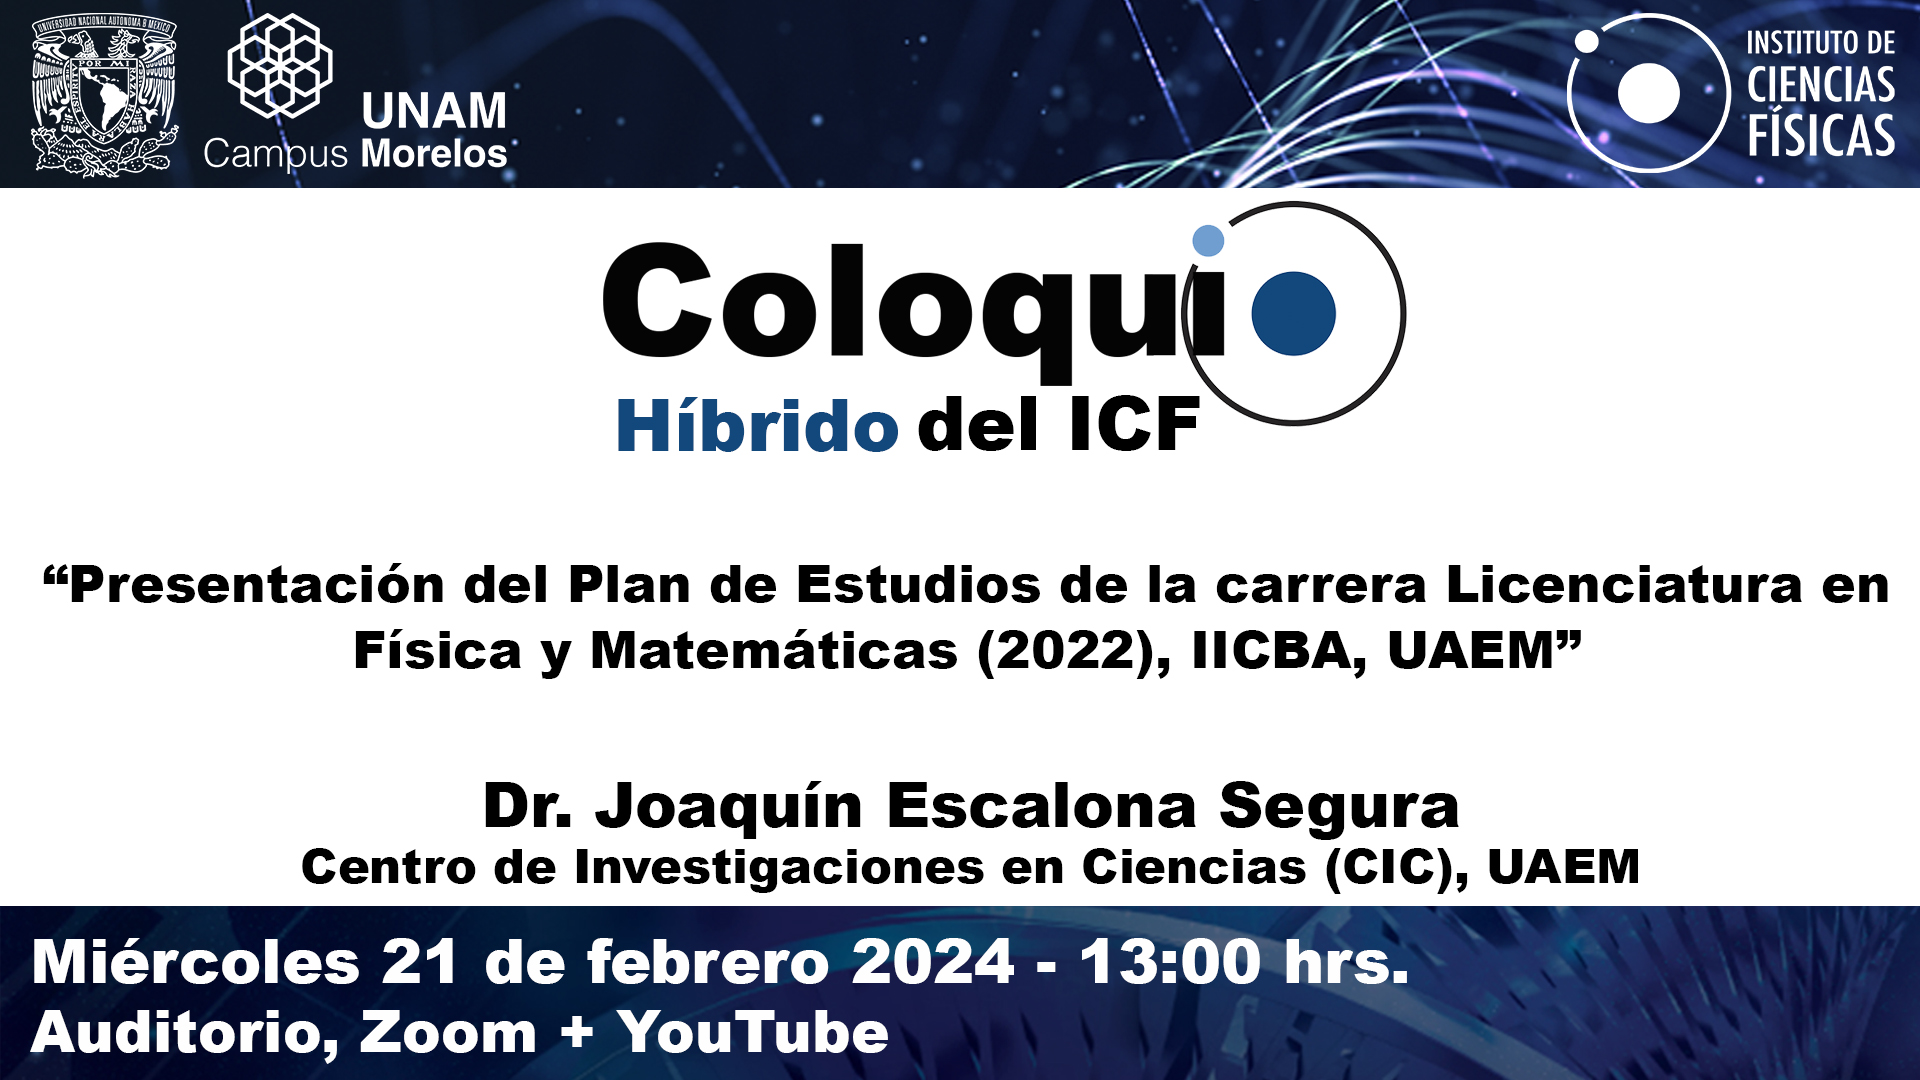 "Presentación del Plan de Estudios de la carrera Licenciatura en Física y Matemáticas (2022), IICBA, UAEM”